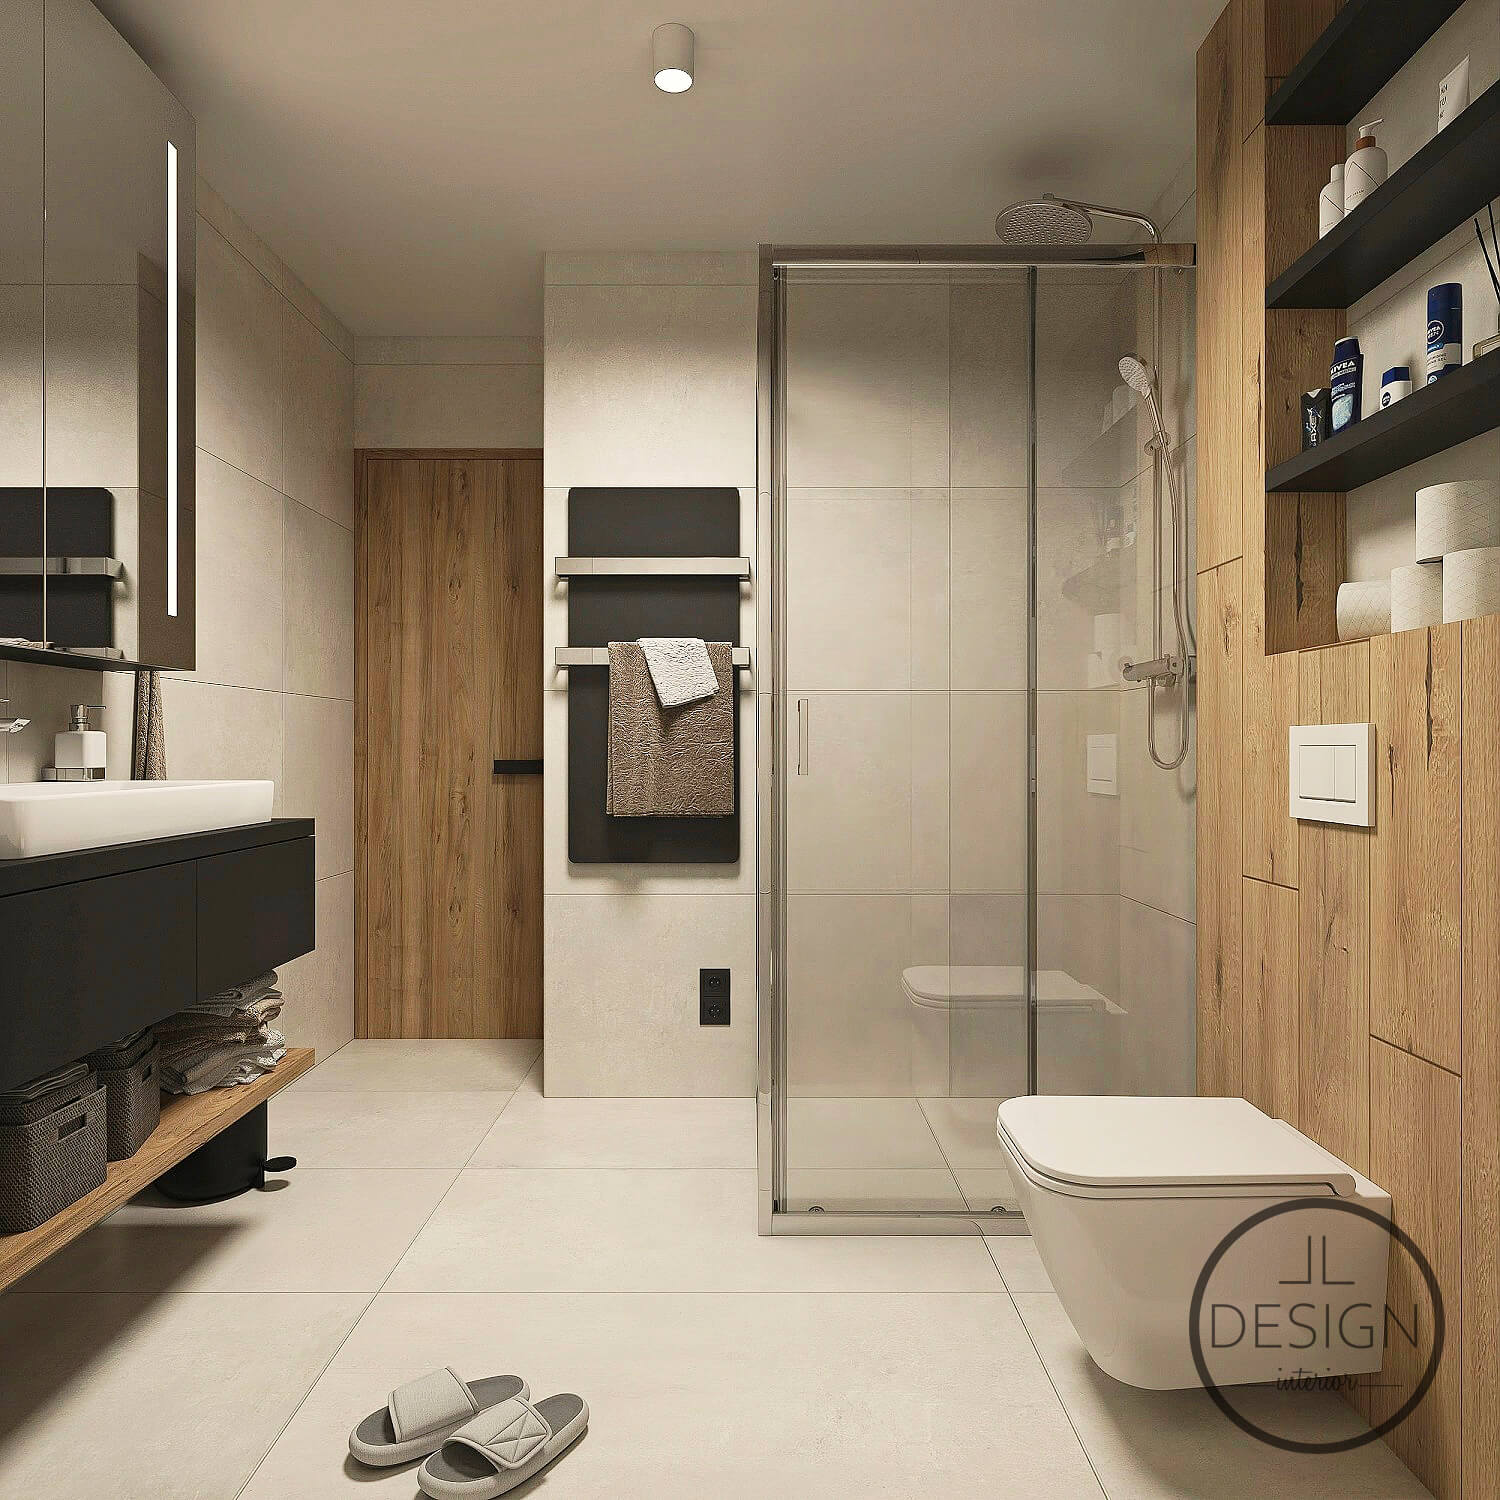 Interiérový dizajn kúpeľňa - Apartmán donovaly - LL design